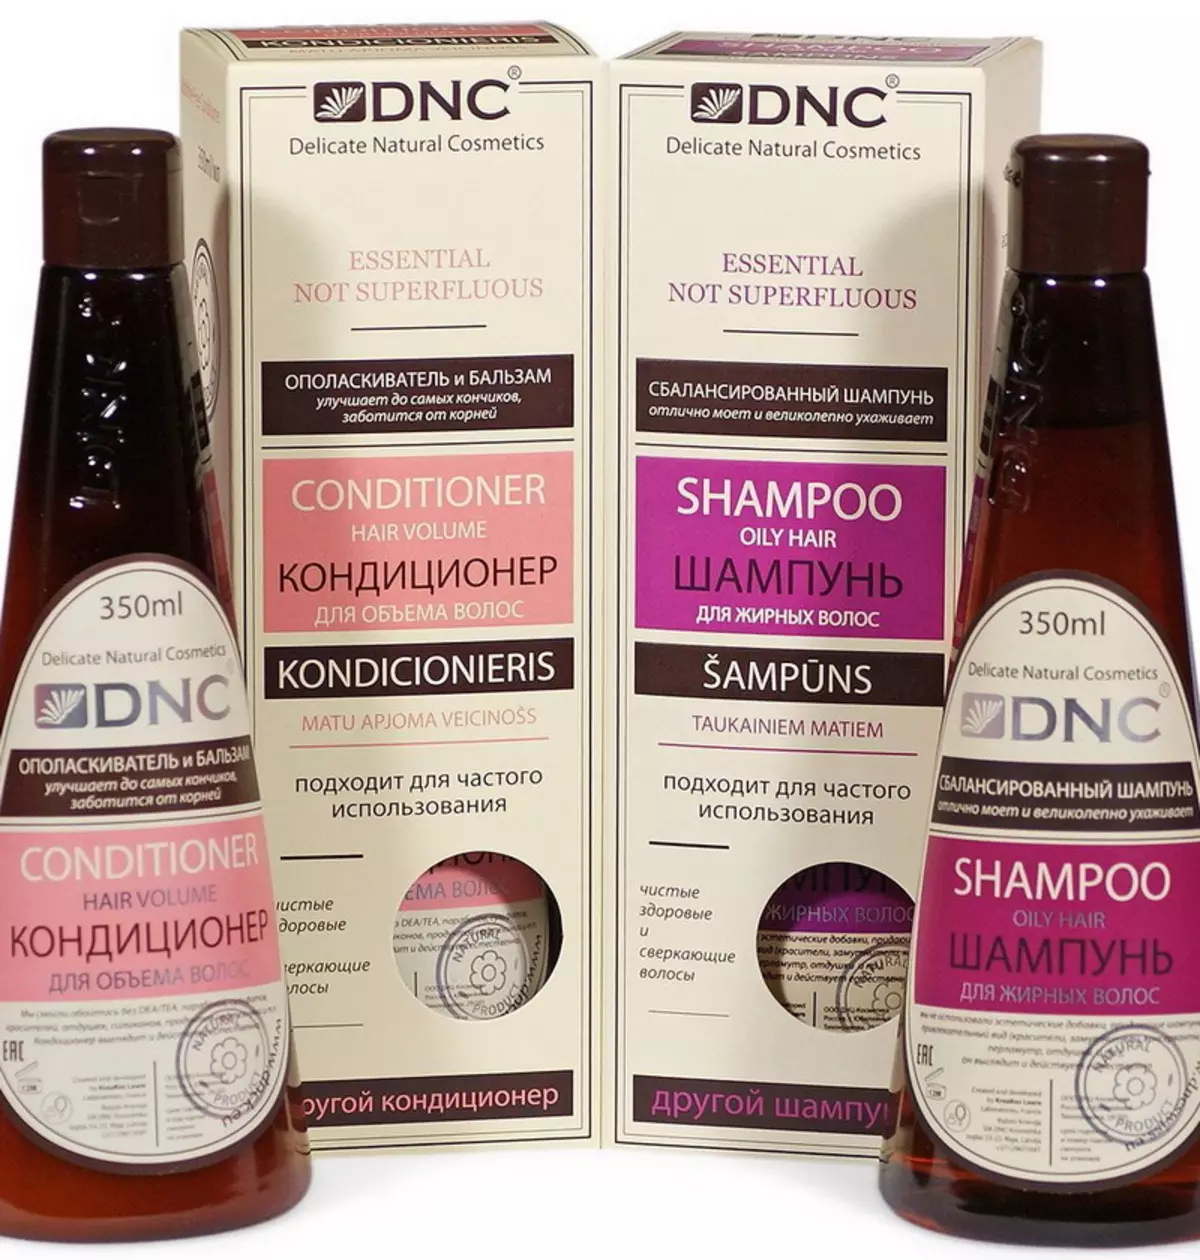 Kozmetikë DNC: Kozmetikë për flokë, vaj kokosit dhe kompani të tjera kozmetike. Shqyrtime të kozmetologëve dhe blerësve 4488_28